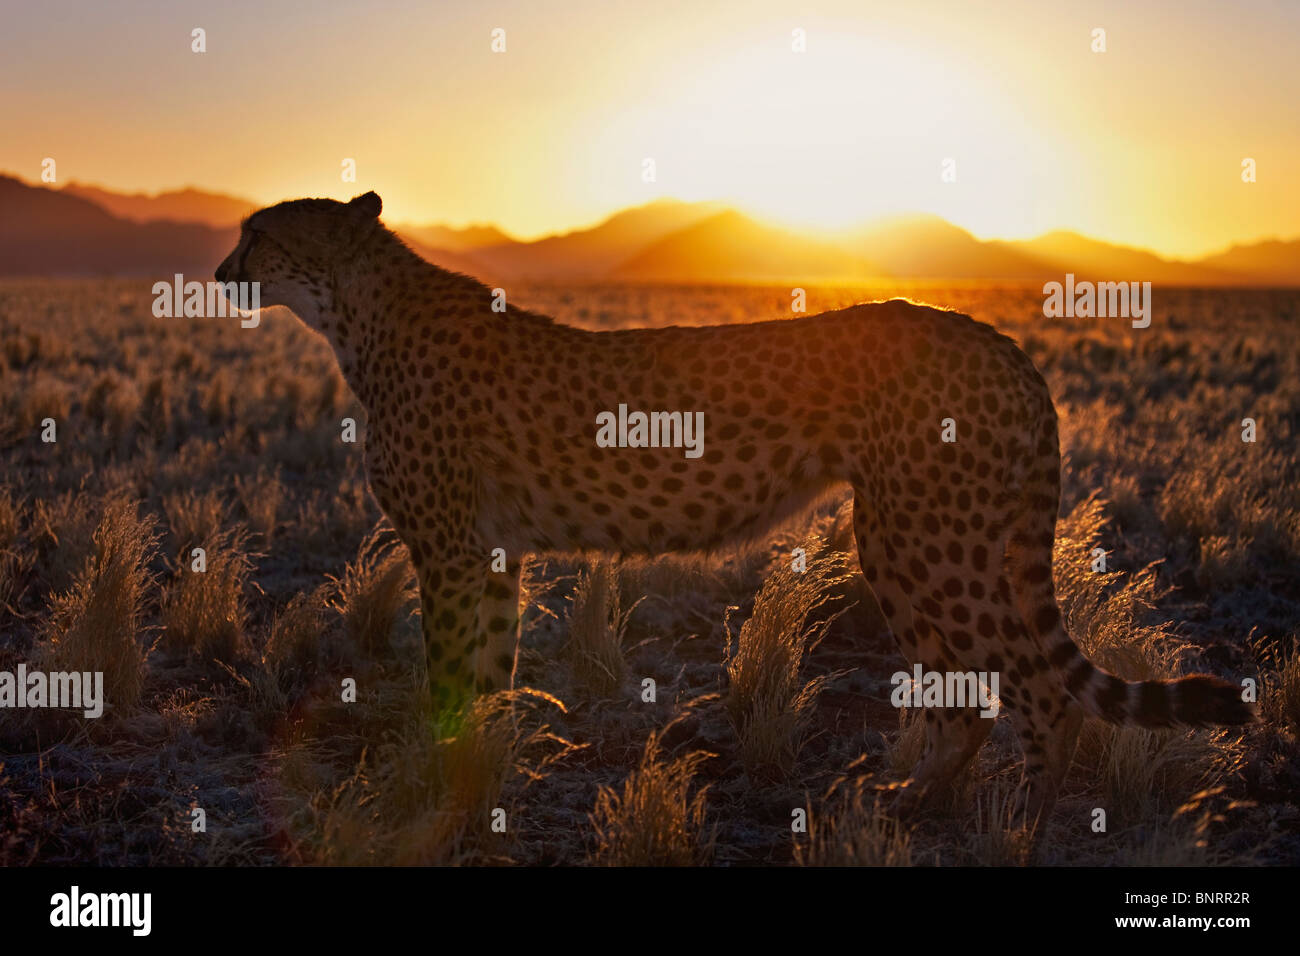 Le Guépard (Acinonyx jubatus)en silhouette debout dans l'habitat du désert au coucher du soleil. Désert du Namib Namibie Banque D'Images